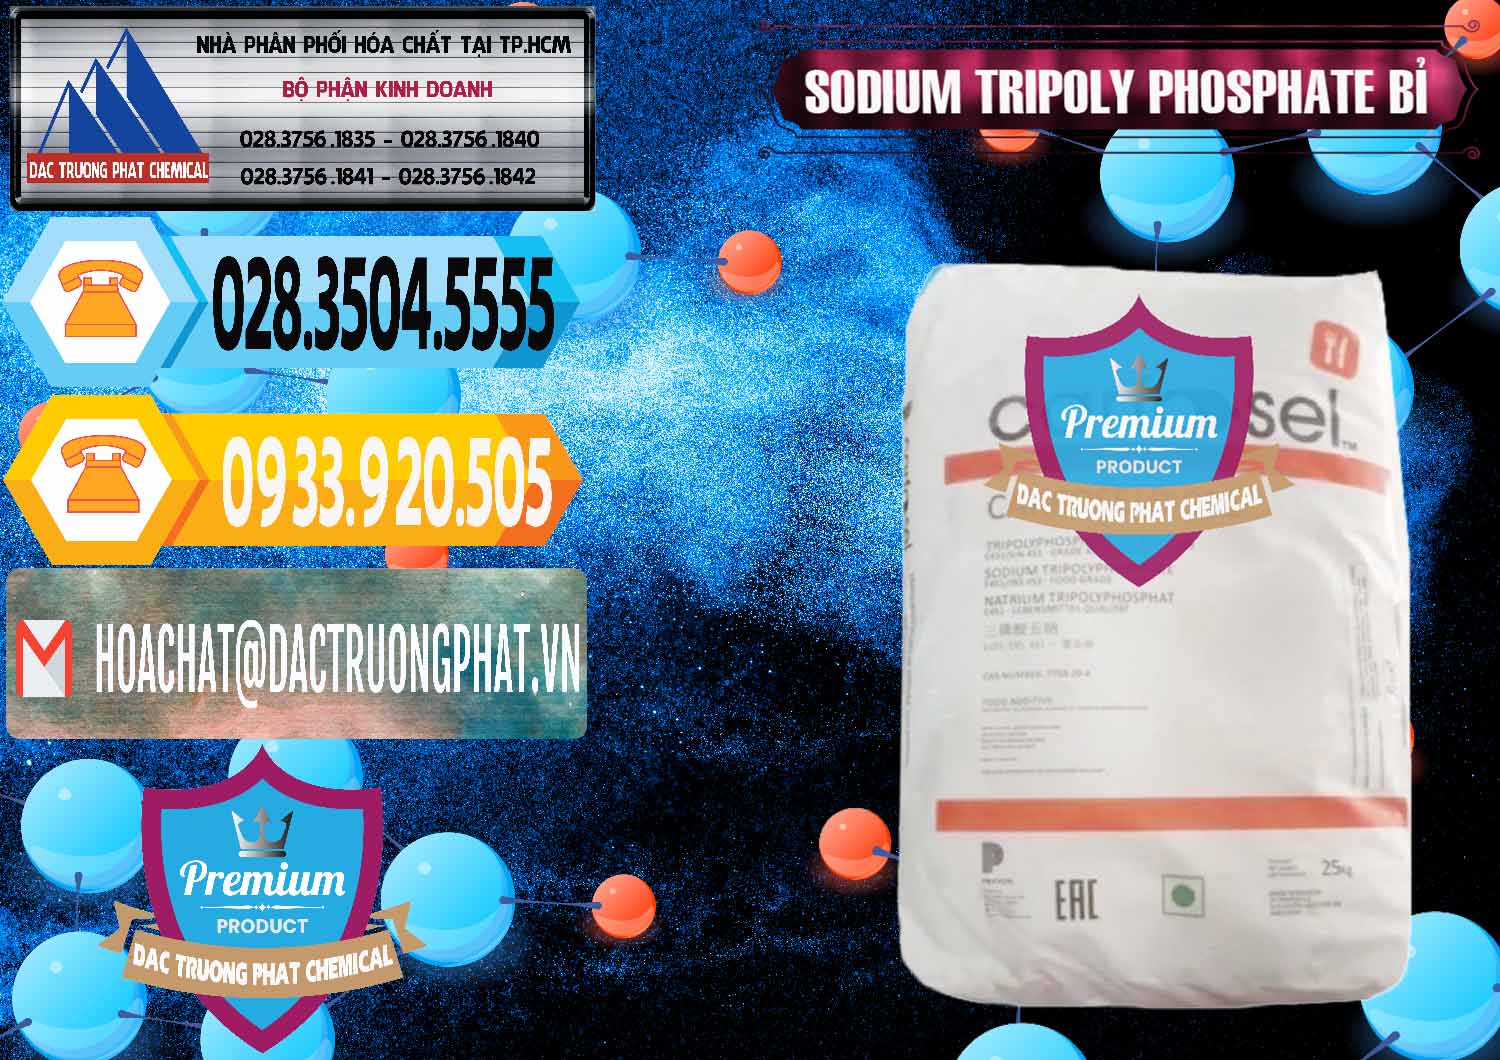 Nơi cung ứng _ bán Sodium Tripoly Phosphate - STPP Carfosel 991 Bỉ Belgium - 0429 - Nơi chuyên cung cấp & kinh doanh hóa chất tại TP.HCM - hoachattayrua.net